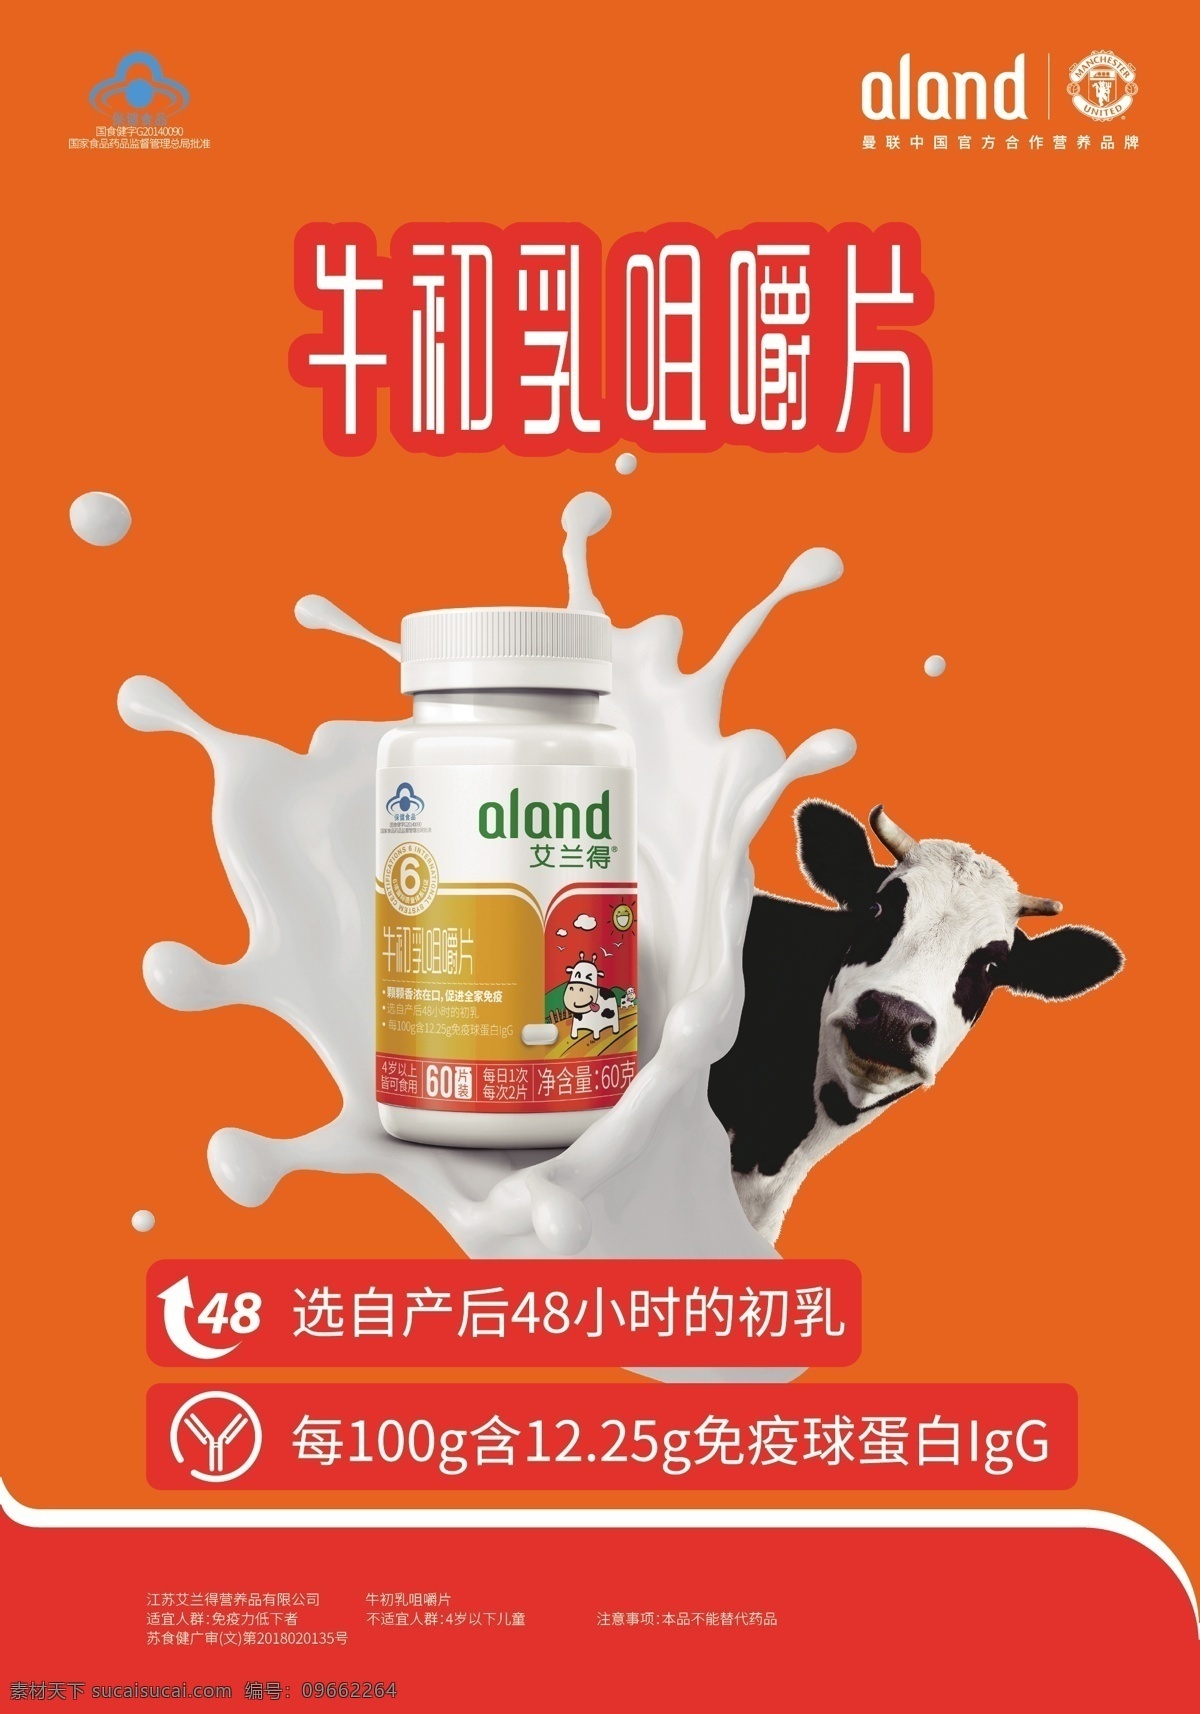 kv 氨糖 kd钙 牛初乳 海报 终端形象 牛奶 牛